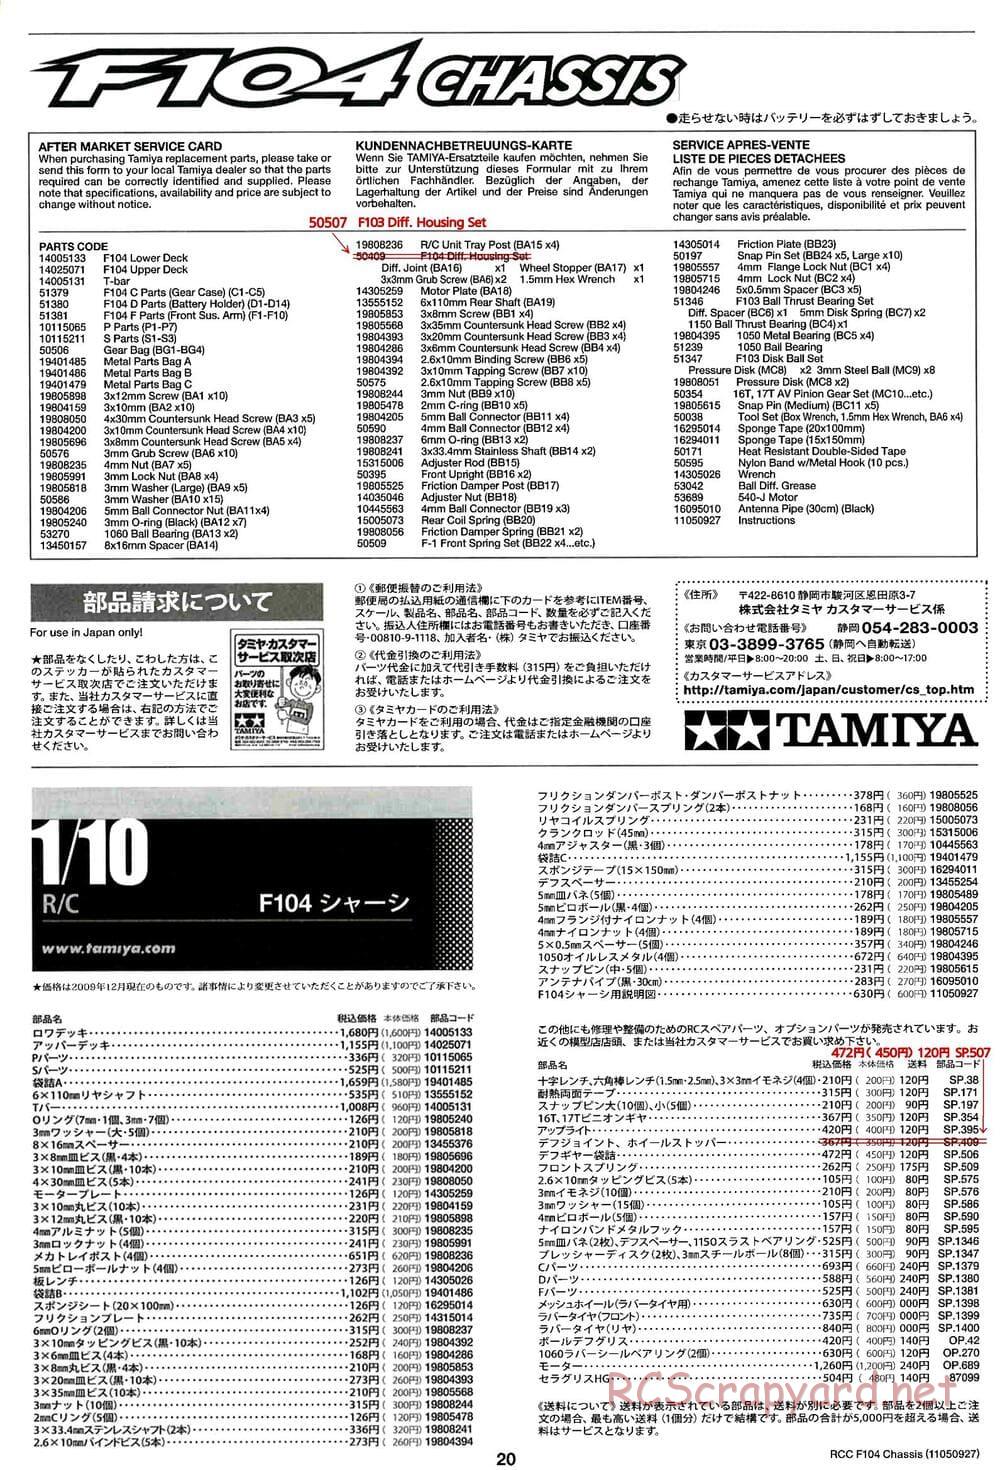 Tamiya - F104 Chassis - Manual - Page 20